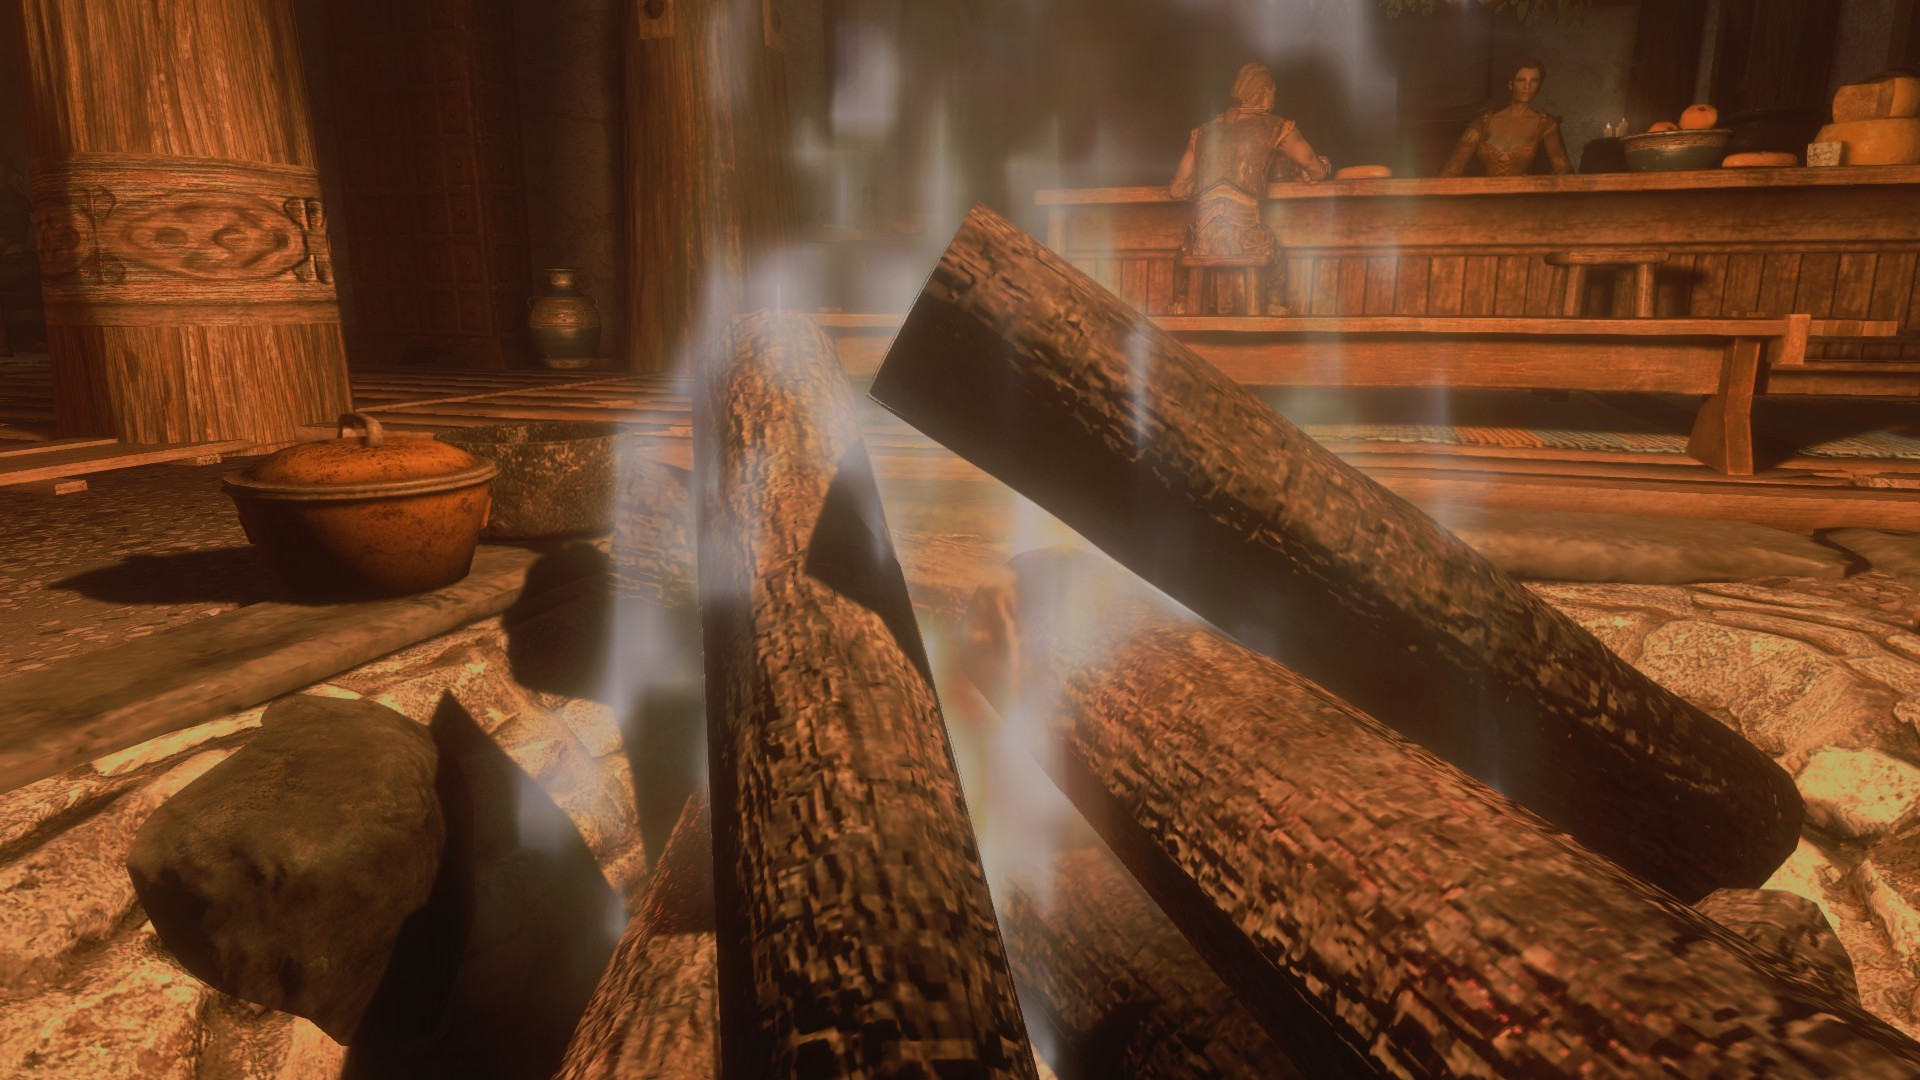 The Elder Scrolls V: Skyrim, Video games, Screen shot Wallpaper